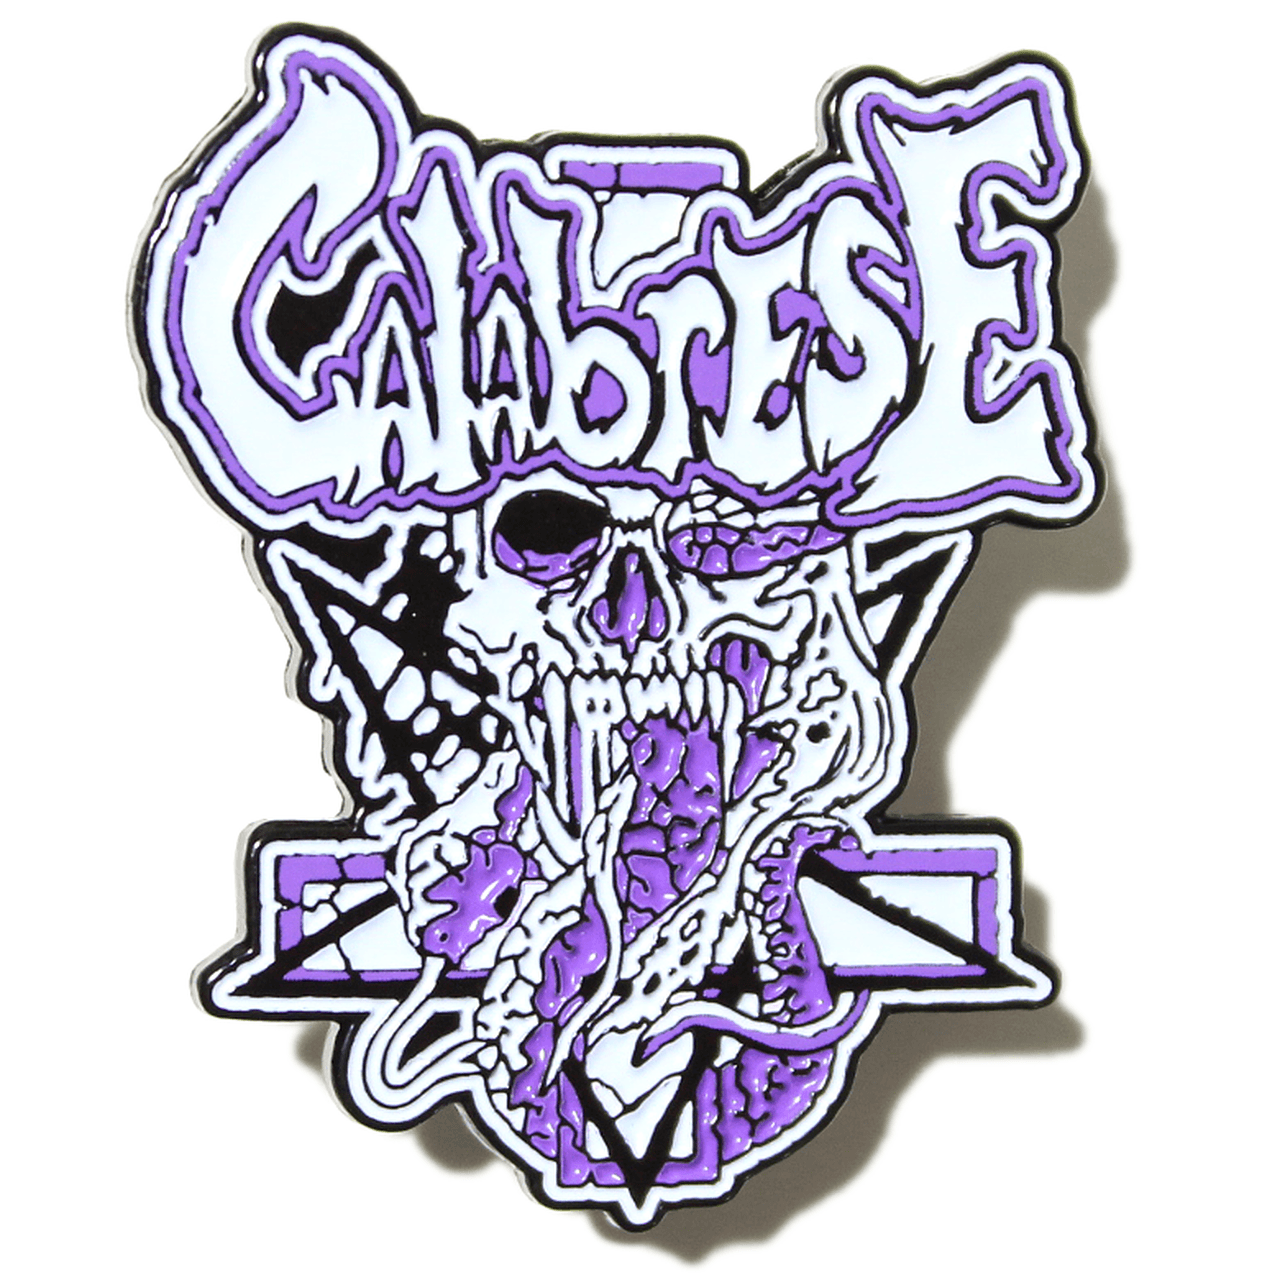 Calabrese Logo - CALABRESE- 1.5 Future Undead Enamel Pin